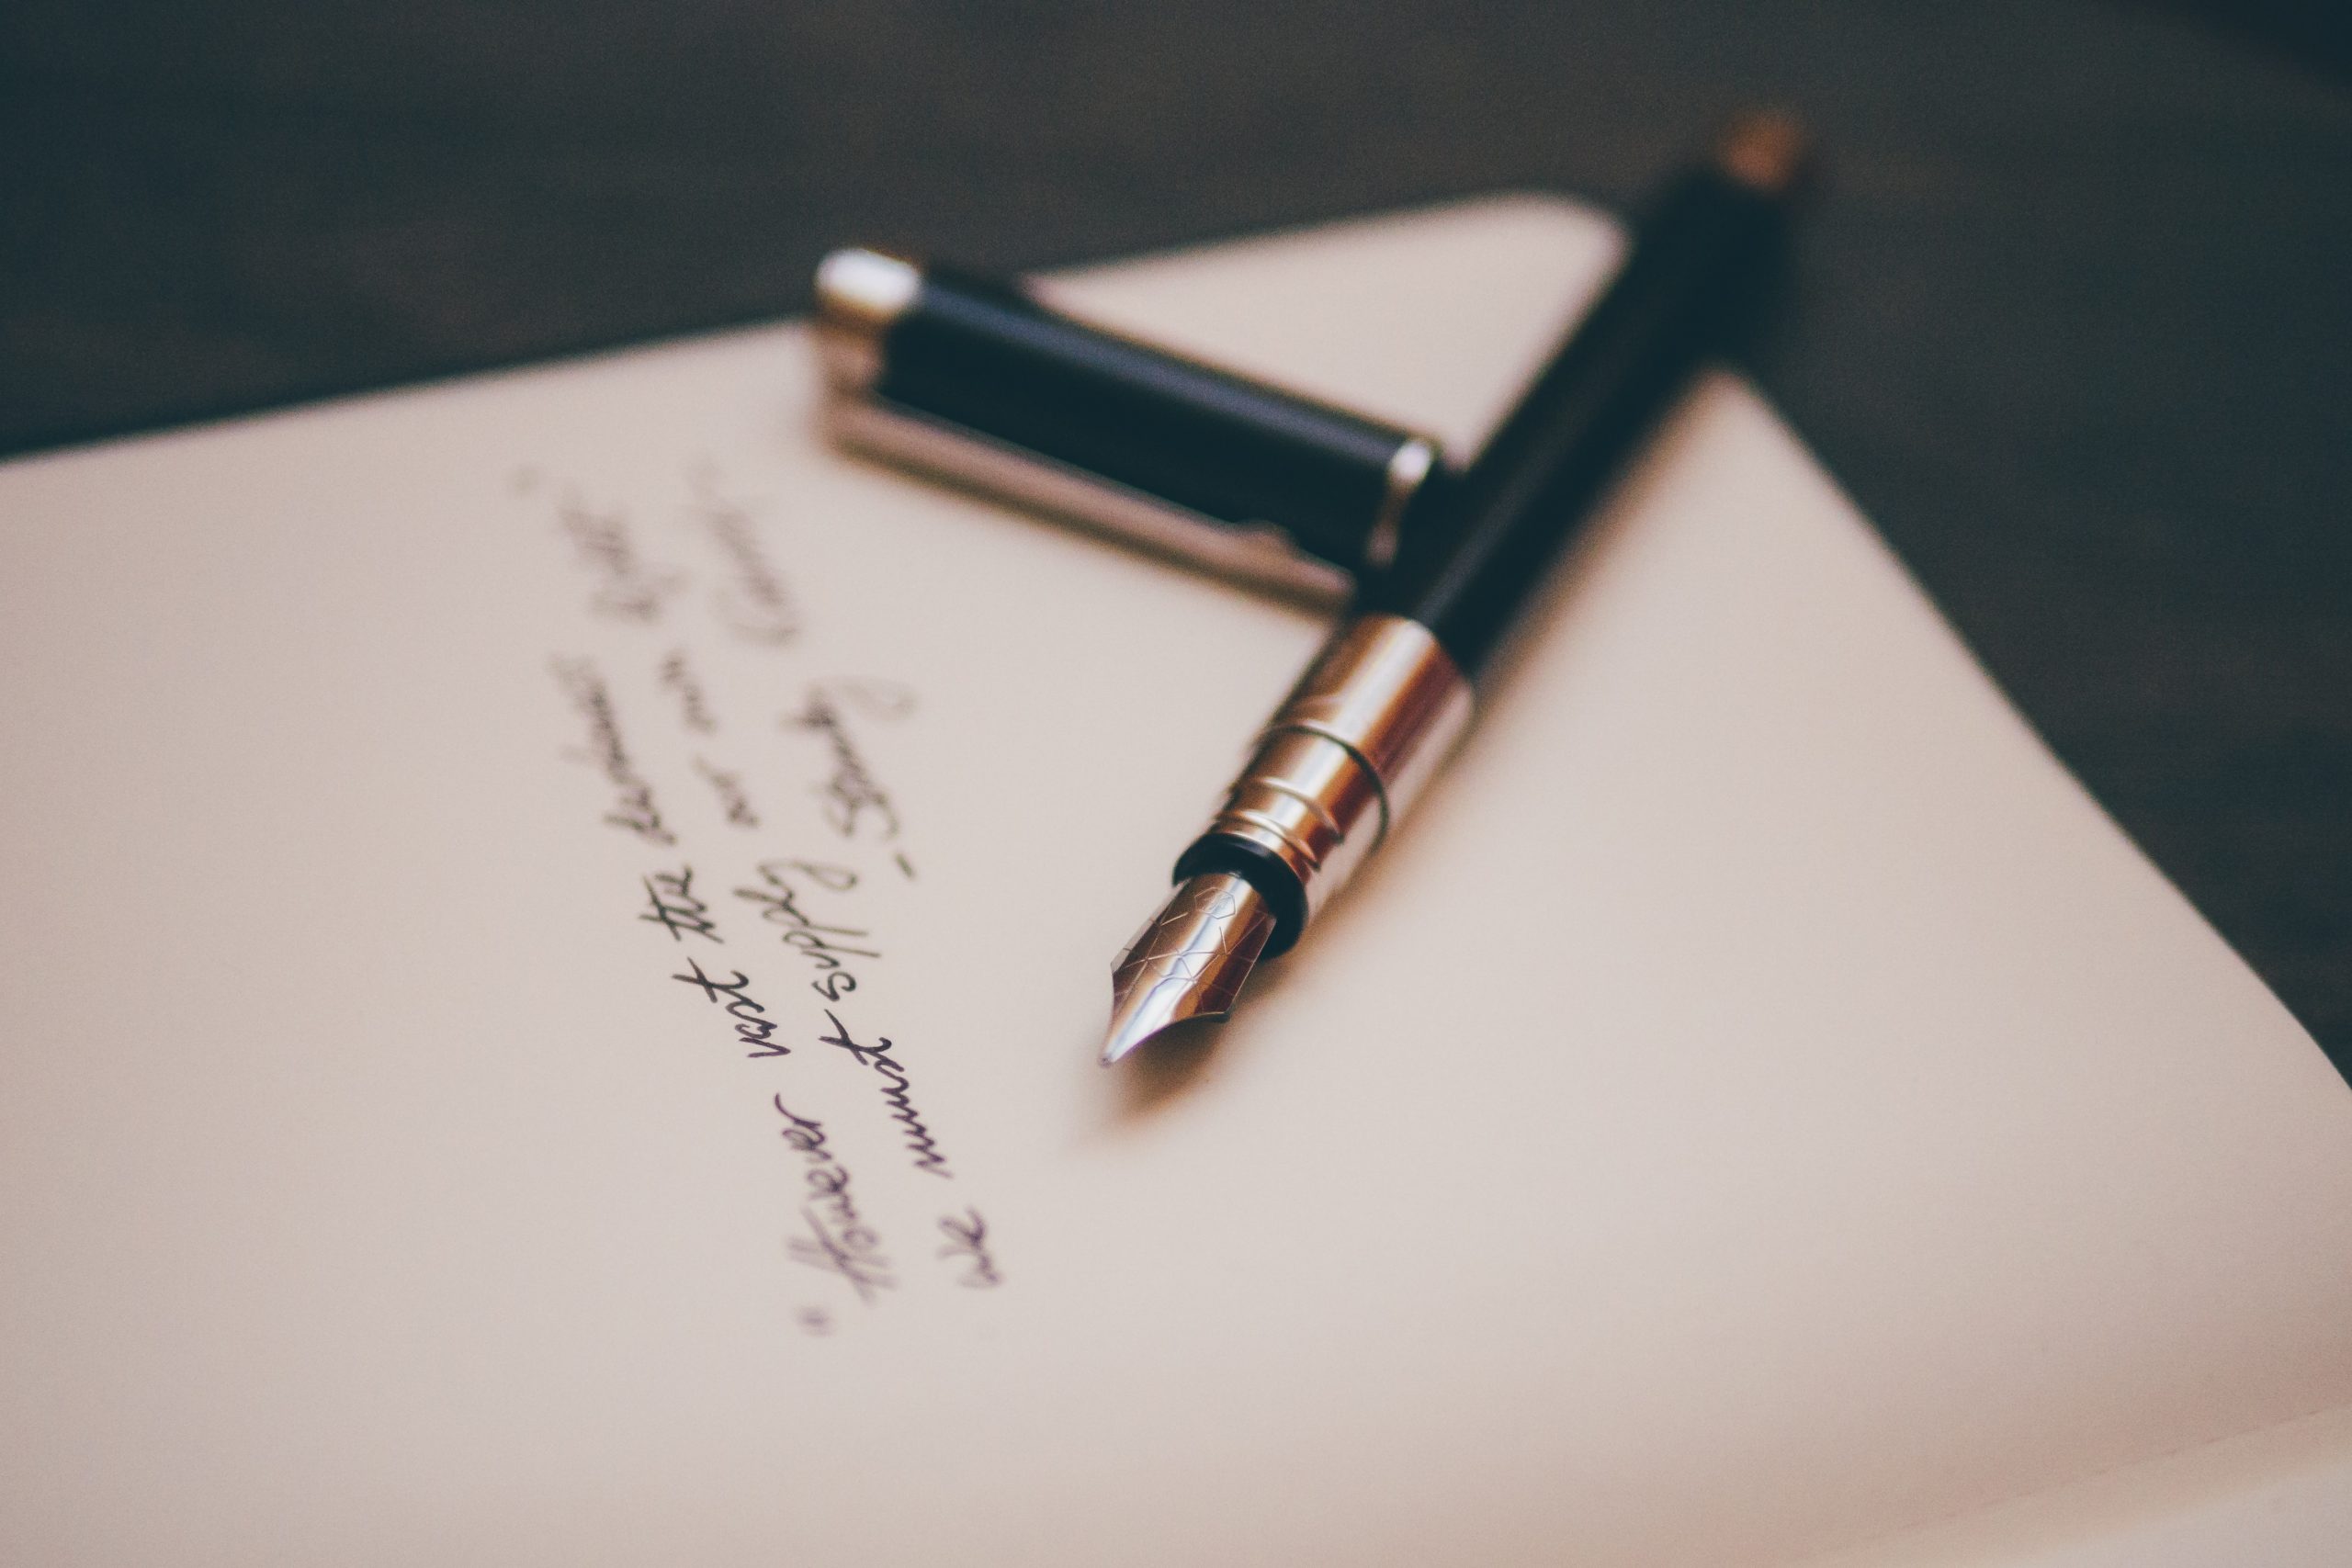 papel, caneta e uma poesia escrita 